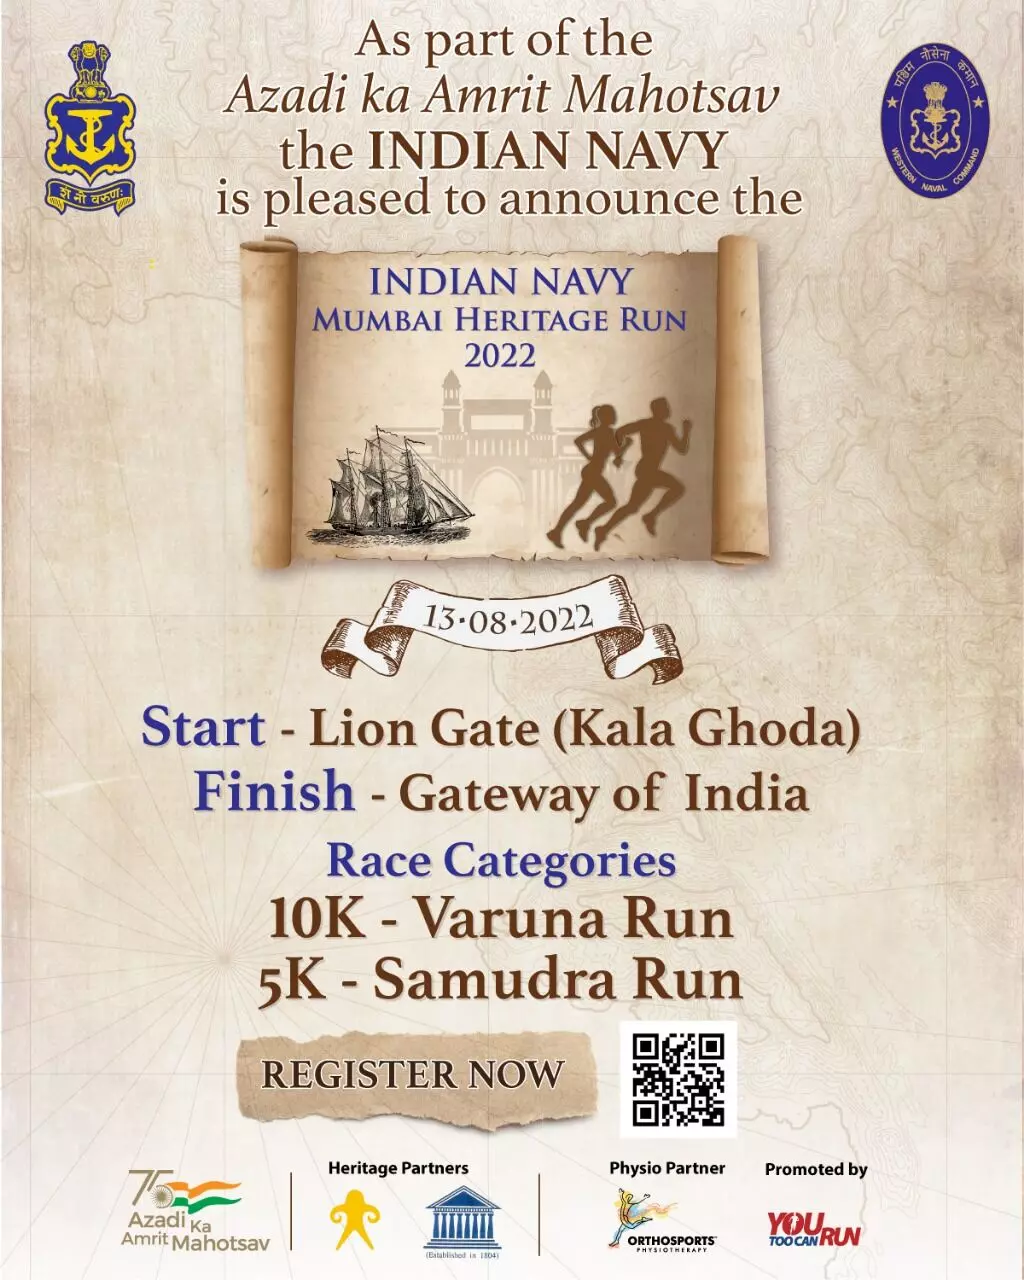 भारतीय नौसेना करेगी 13 अगस्त को मुंबई हेरिटेज रन का आयोजन